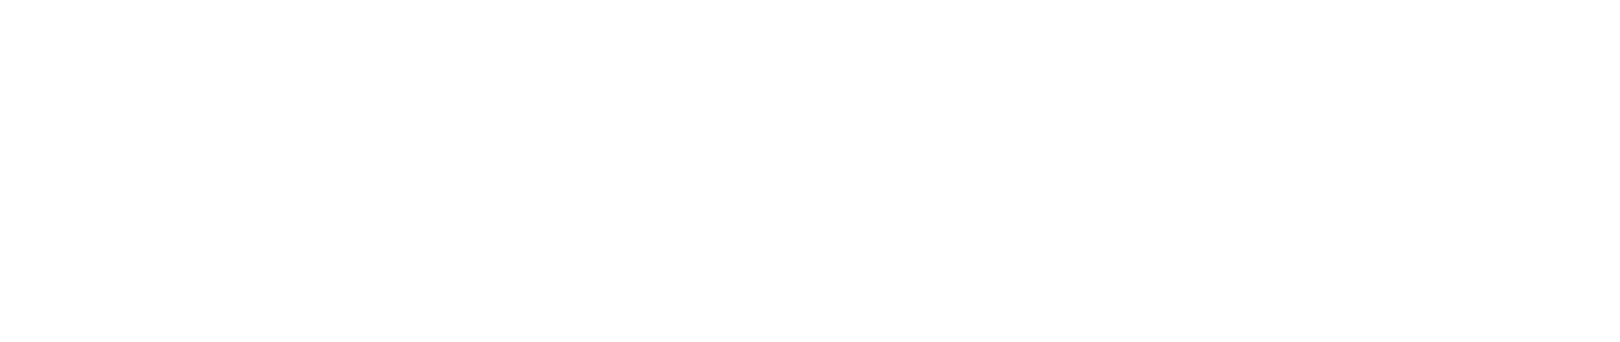 wesco-logo-1